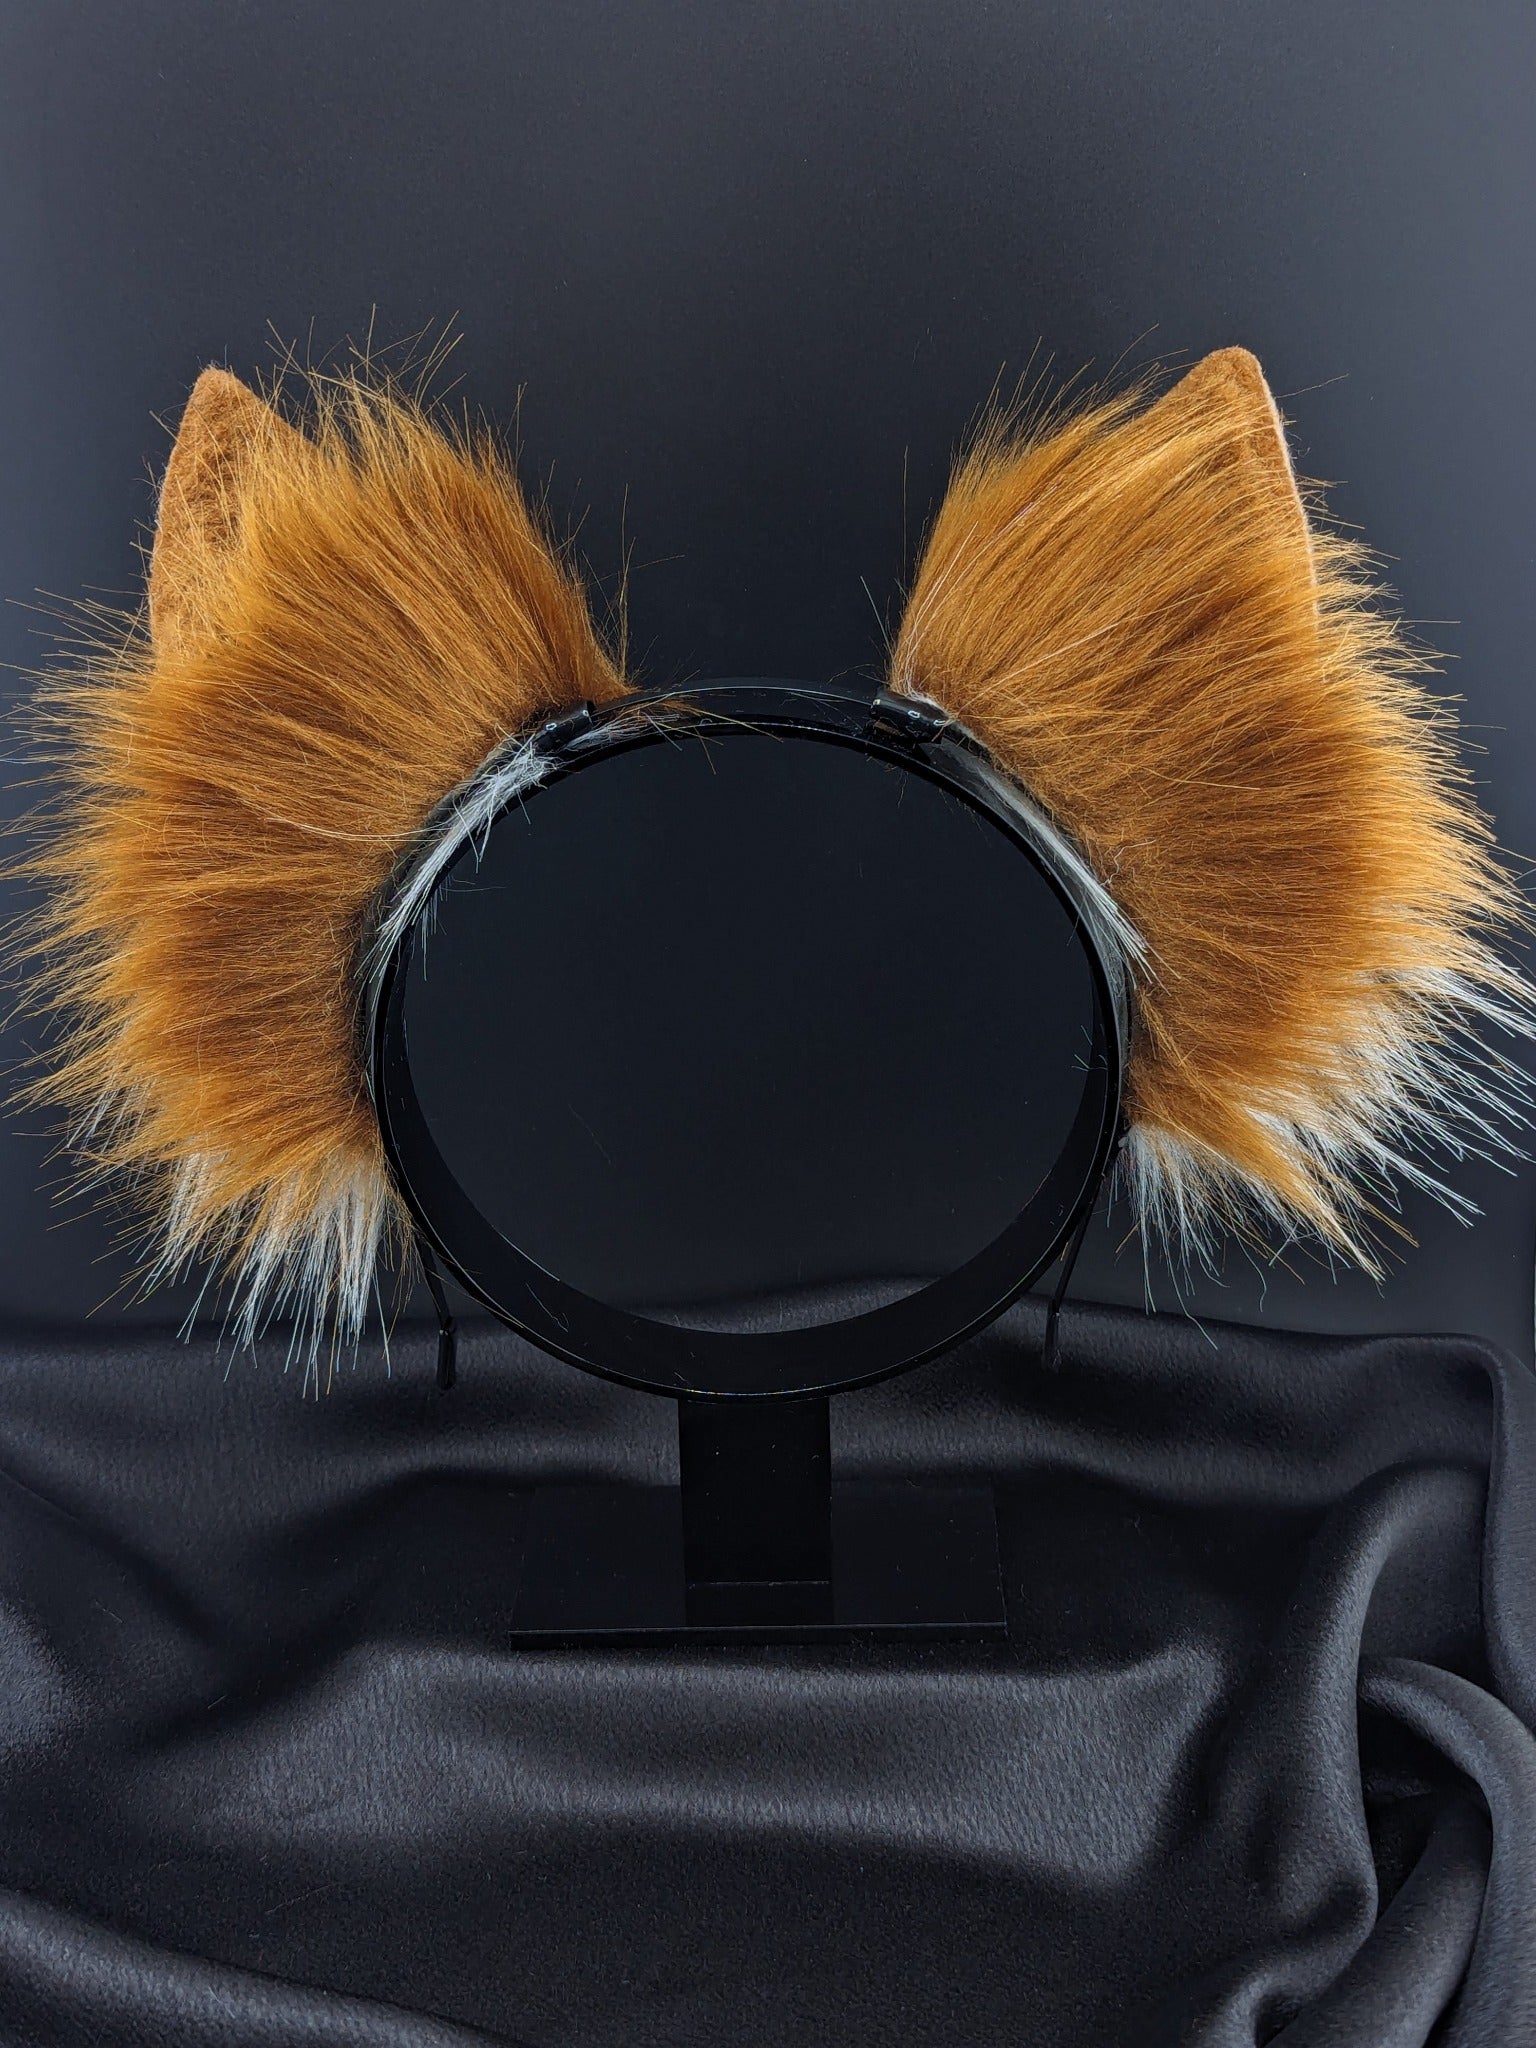 Red Fox Ears